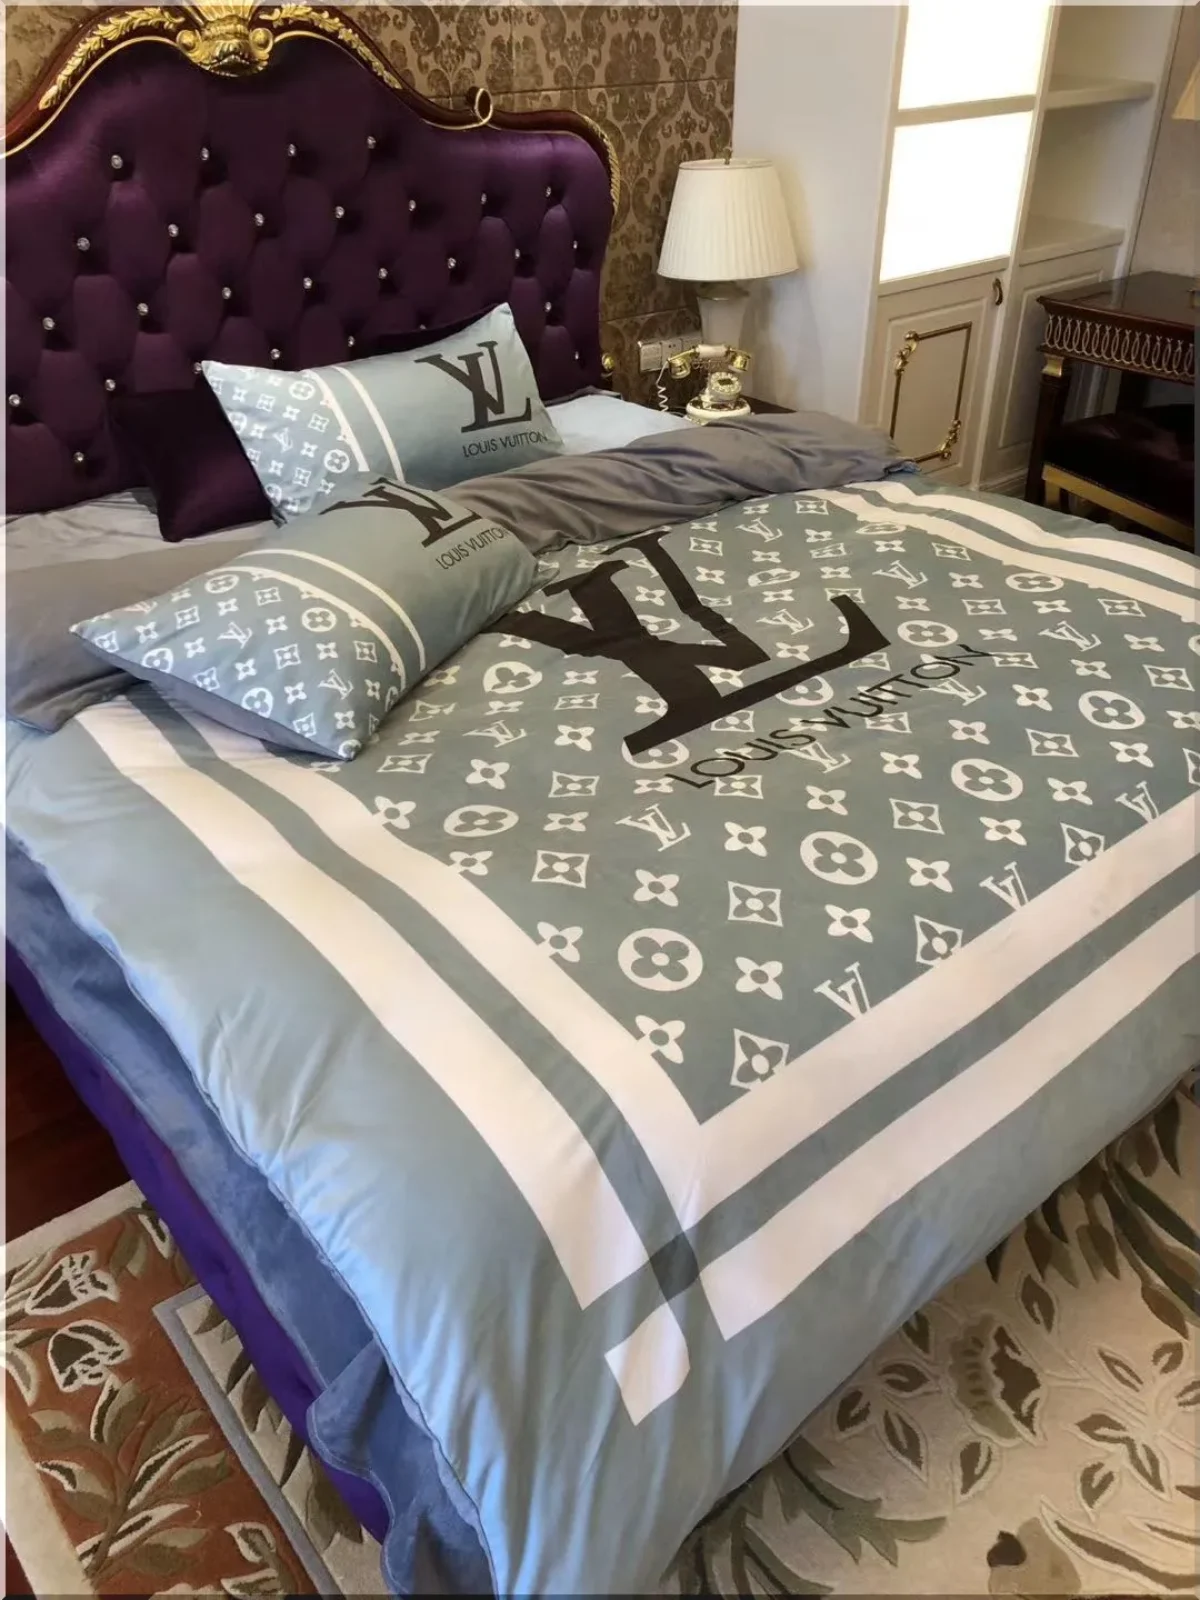 Louis Vuitton Grey Monogram Bed Set Queen - Peto Rugs